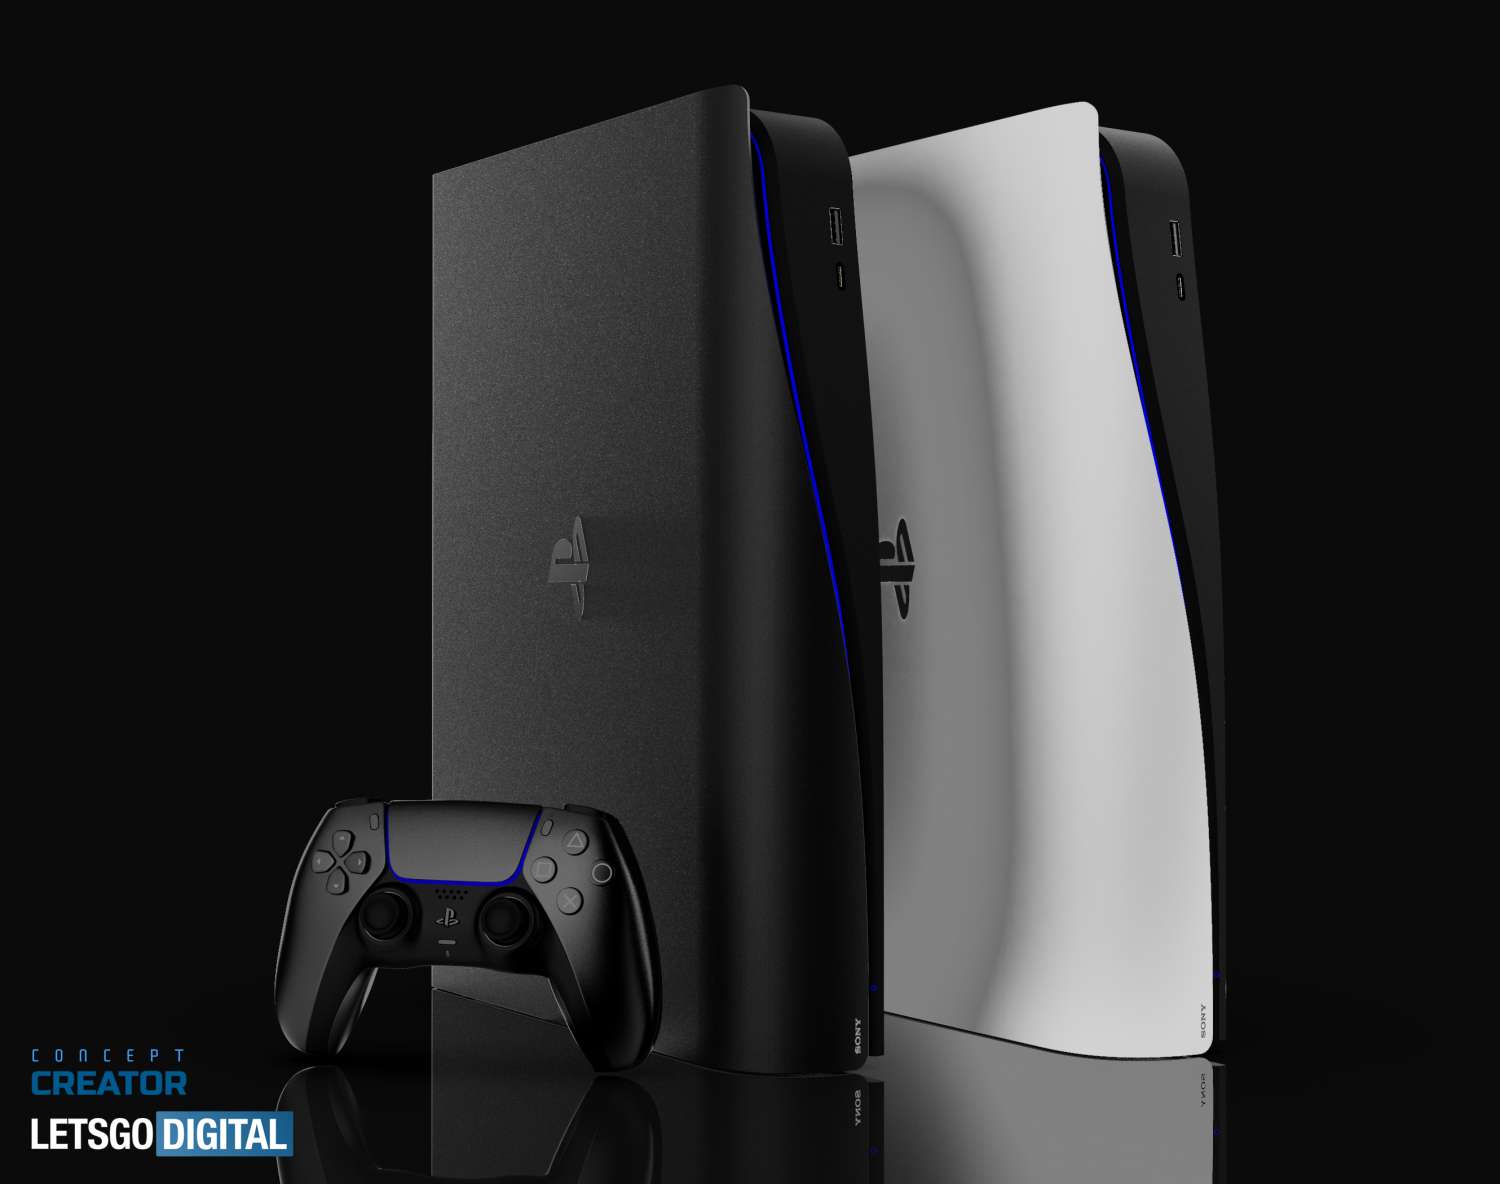 Filtran nueva información sobre el PlayStation 5 Slim